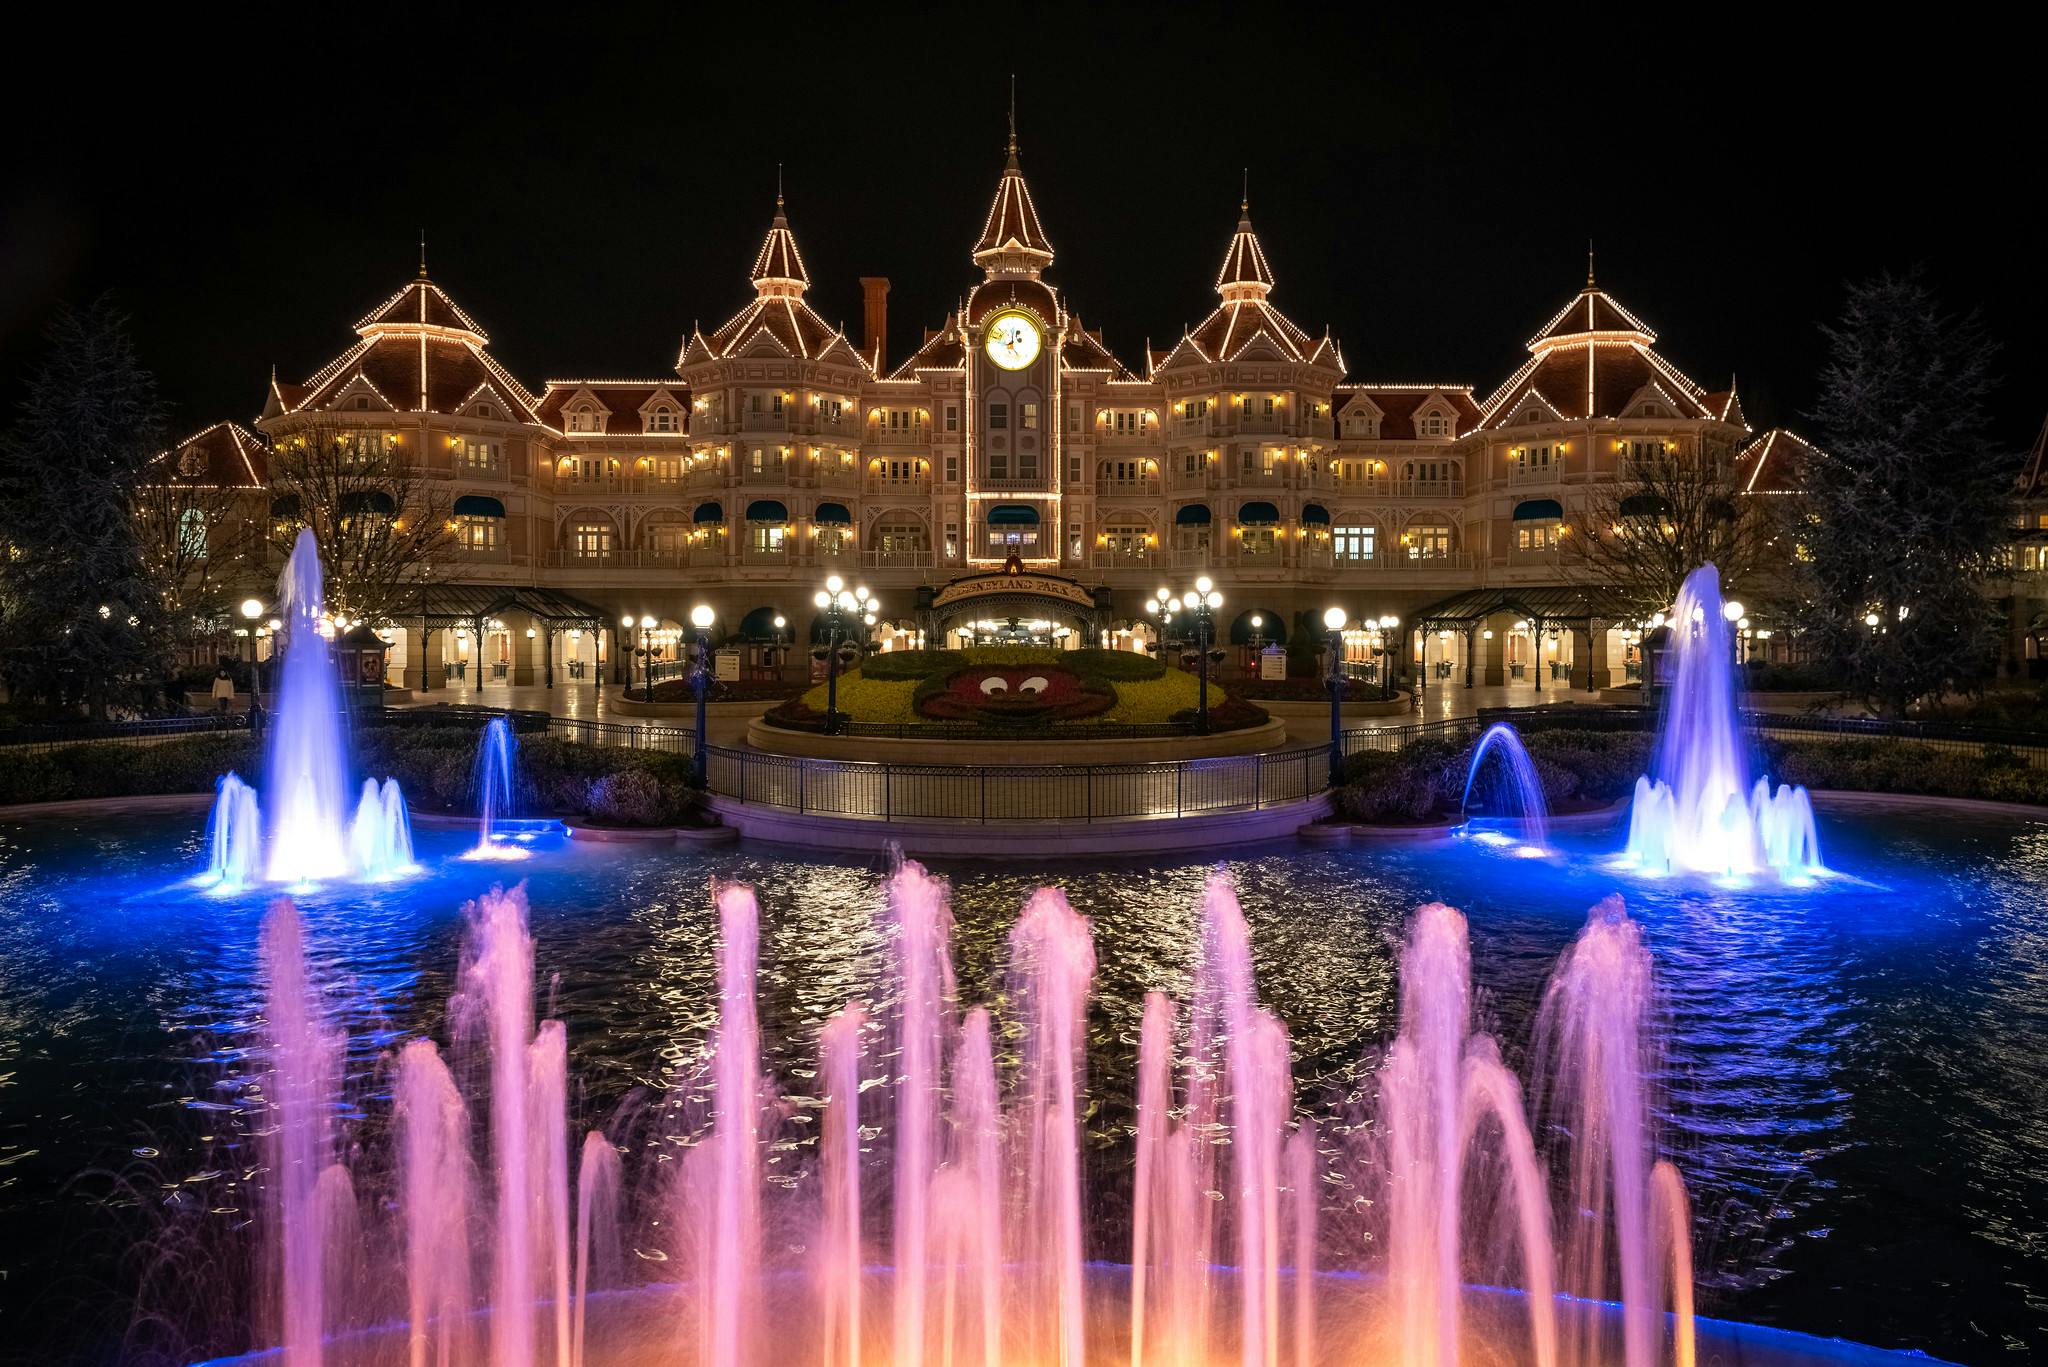 Hôtels de Disneyland Luxe, foule de prestations et excellents restaurants